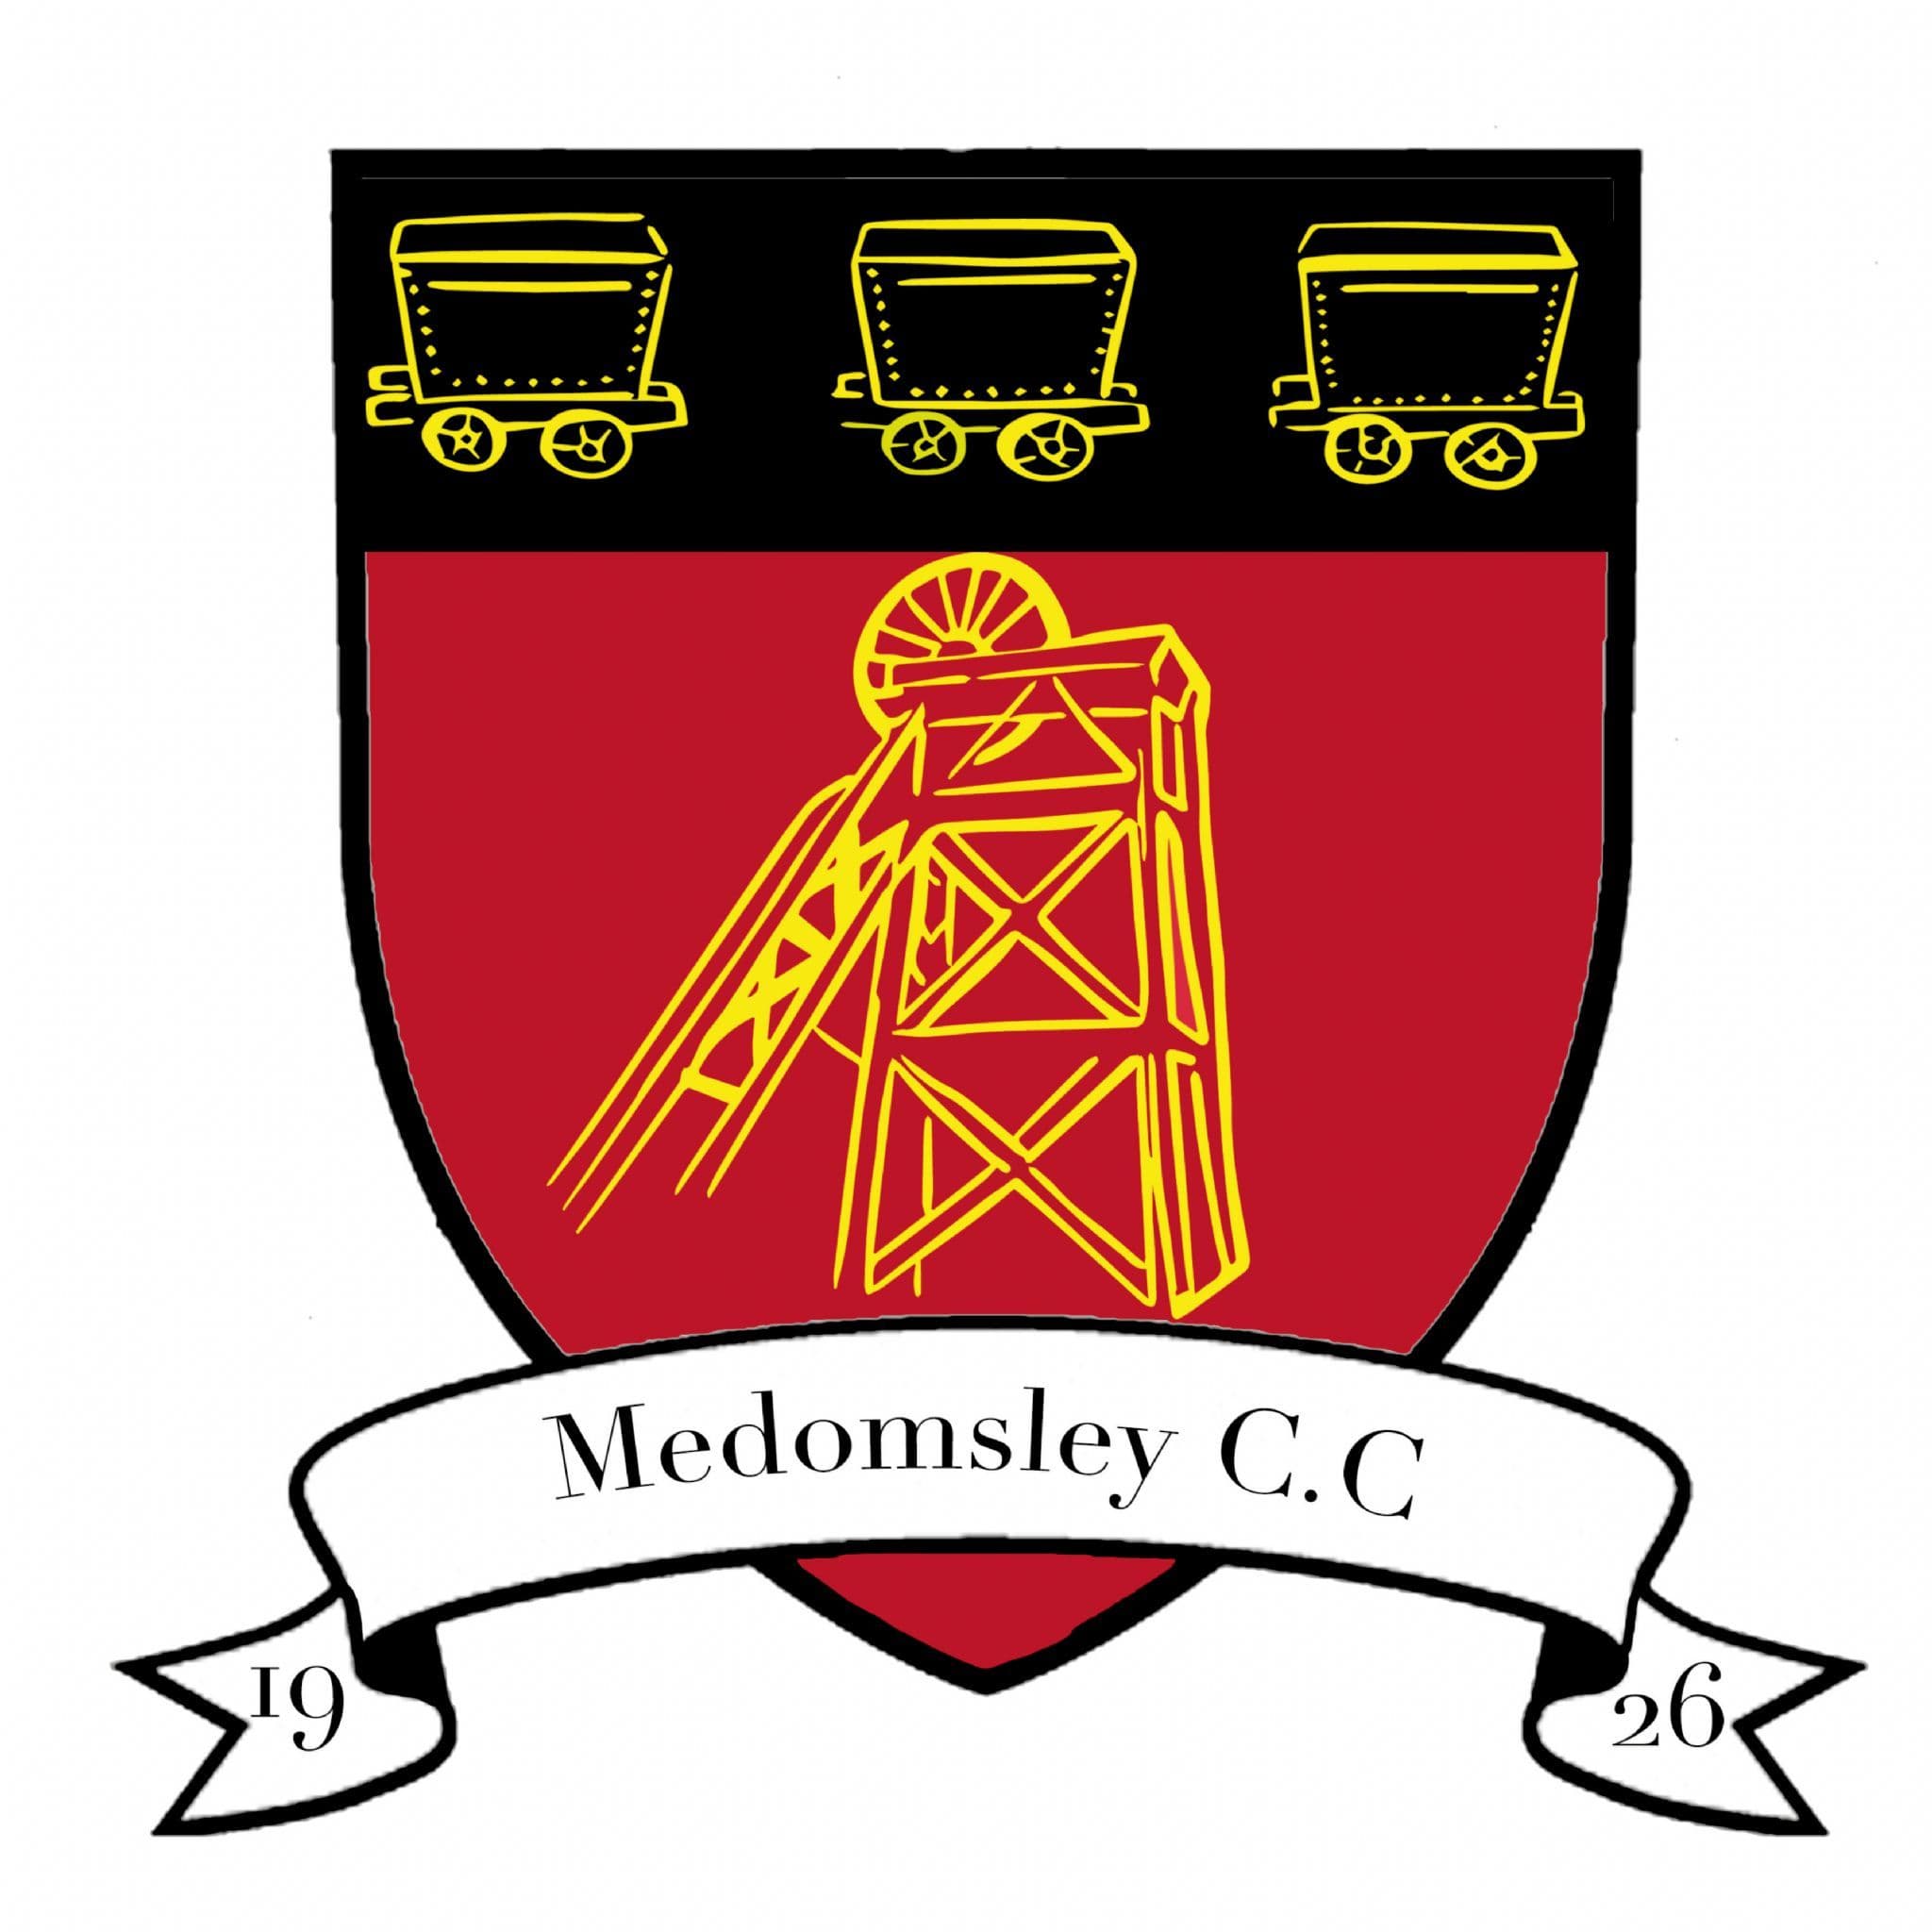 Medomsley Cricket Club